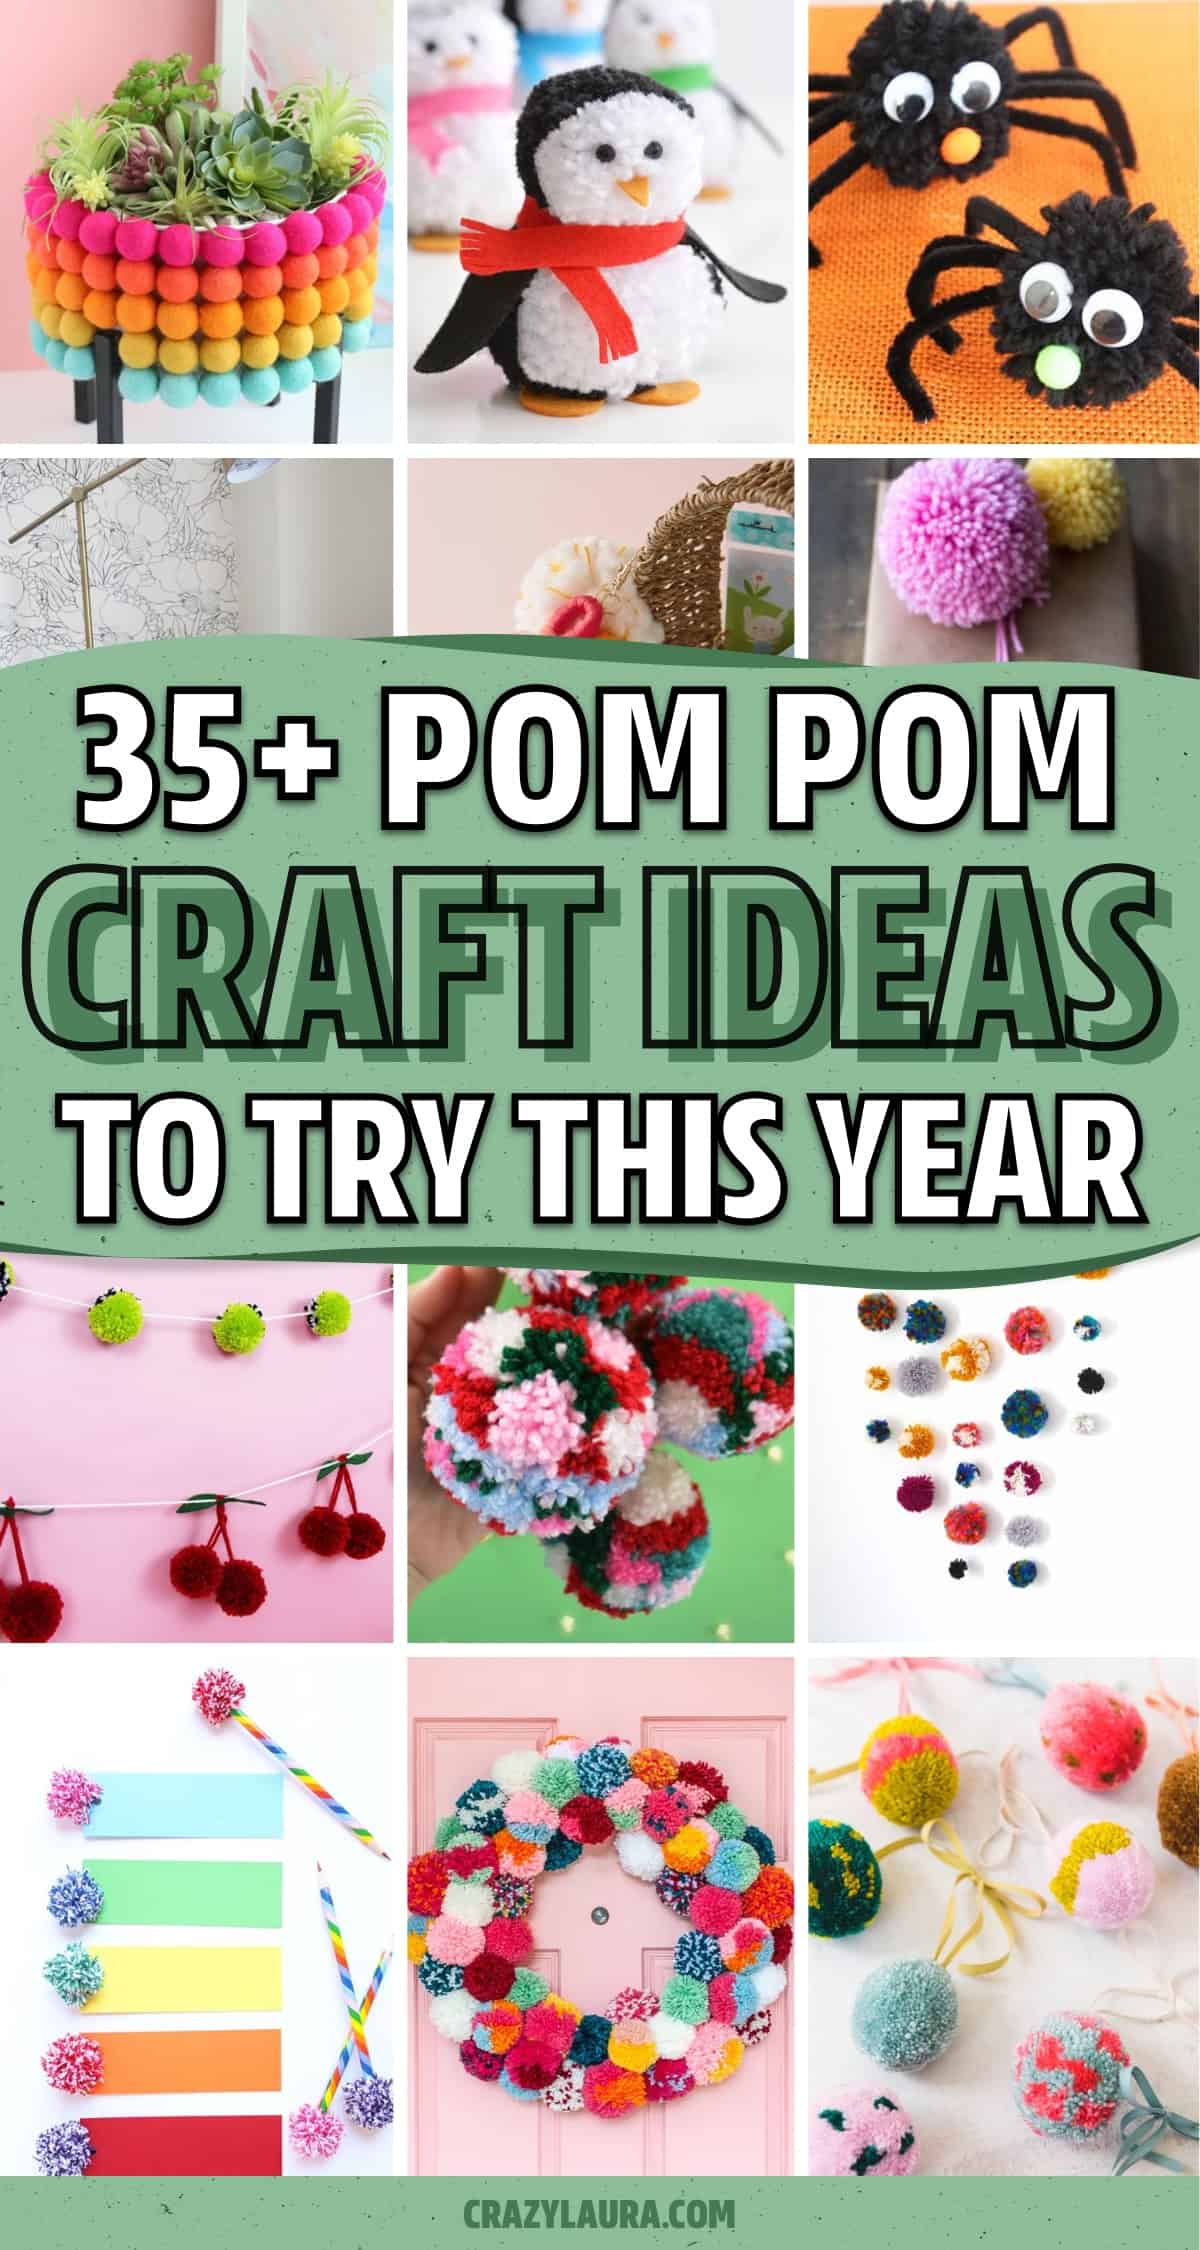 craft ideas using pom poms